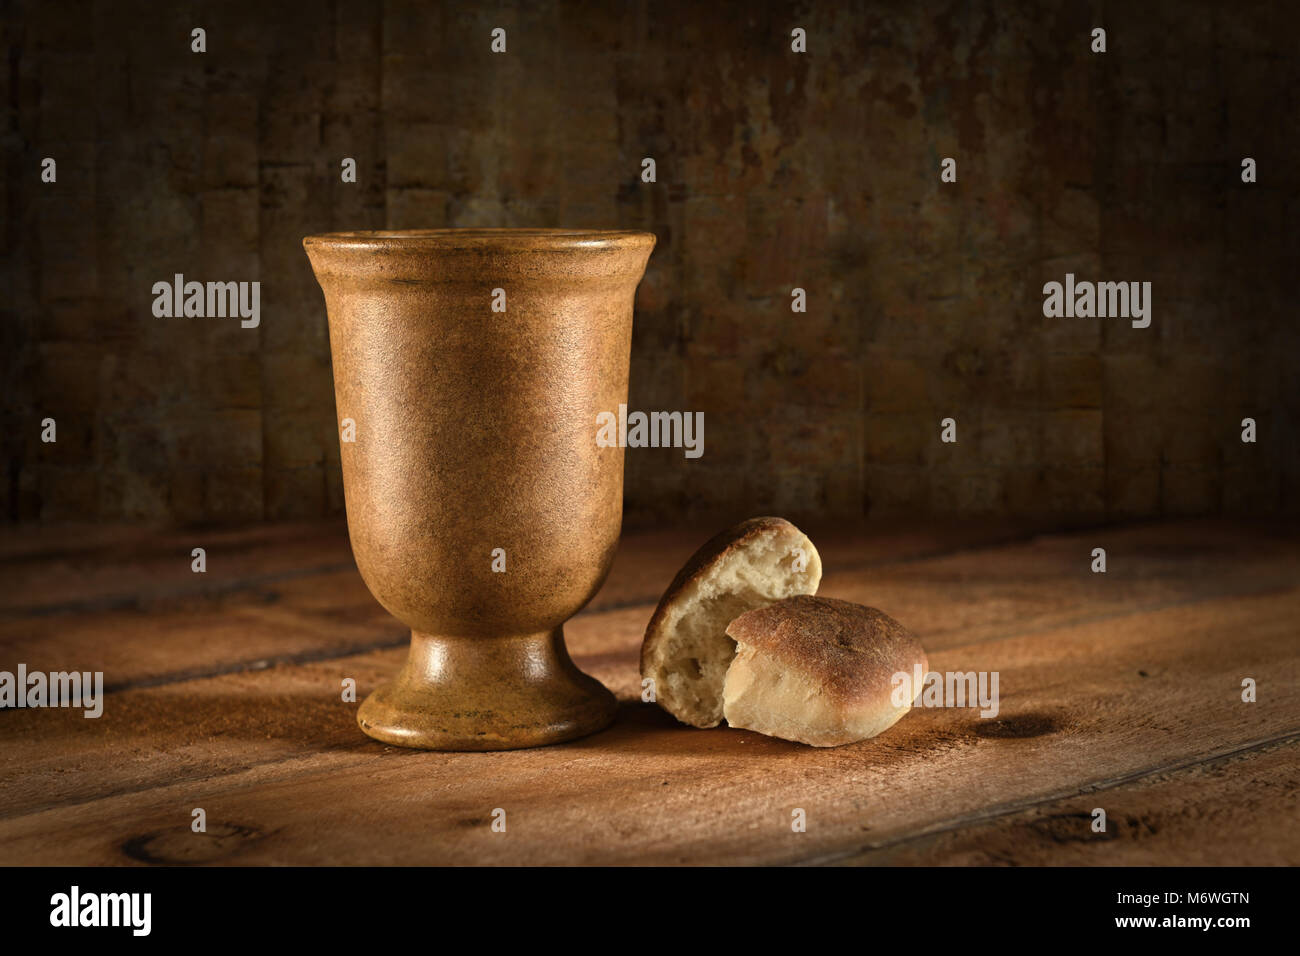 Copa de vino y pan como símbolos de la comunión en la mesa de madera Foto de stock